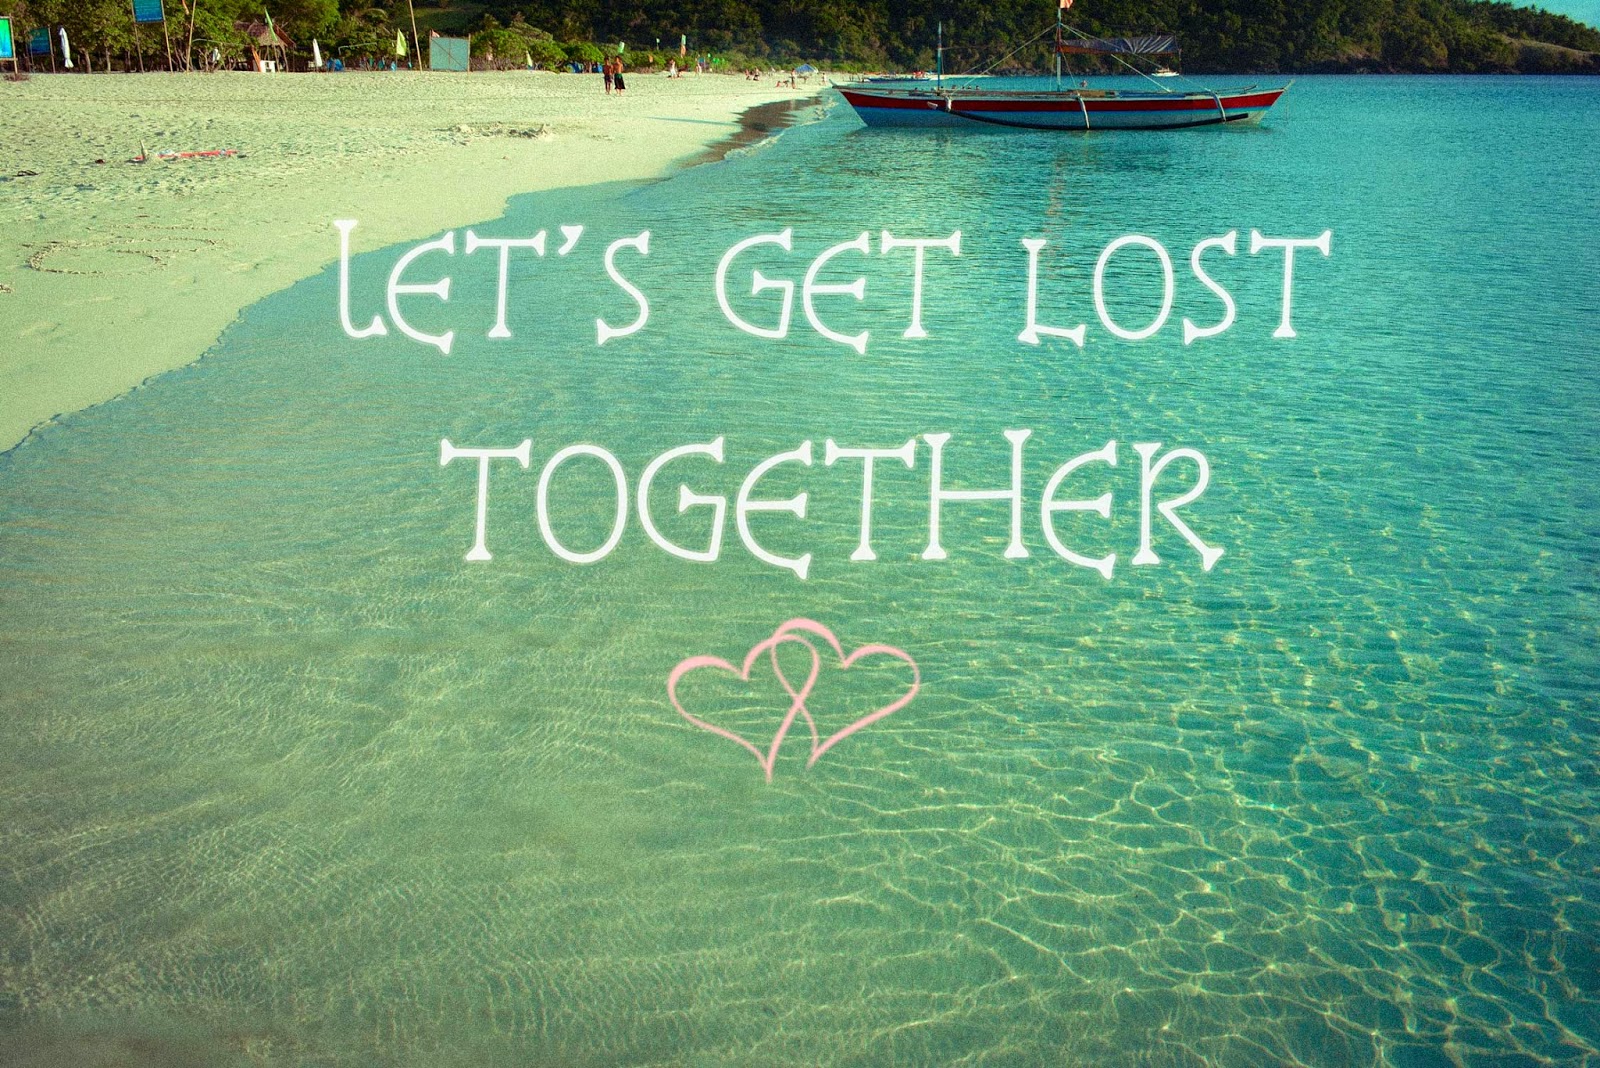 Lets get back. Let's get Lost. Get Lost get on. Let's Travel together. Lets get Lost together футболка.